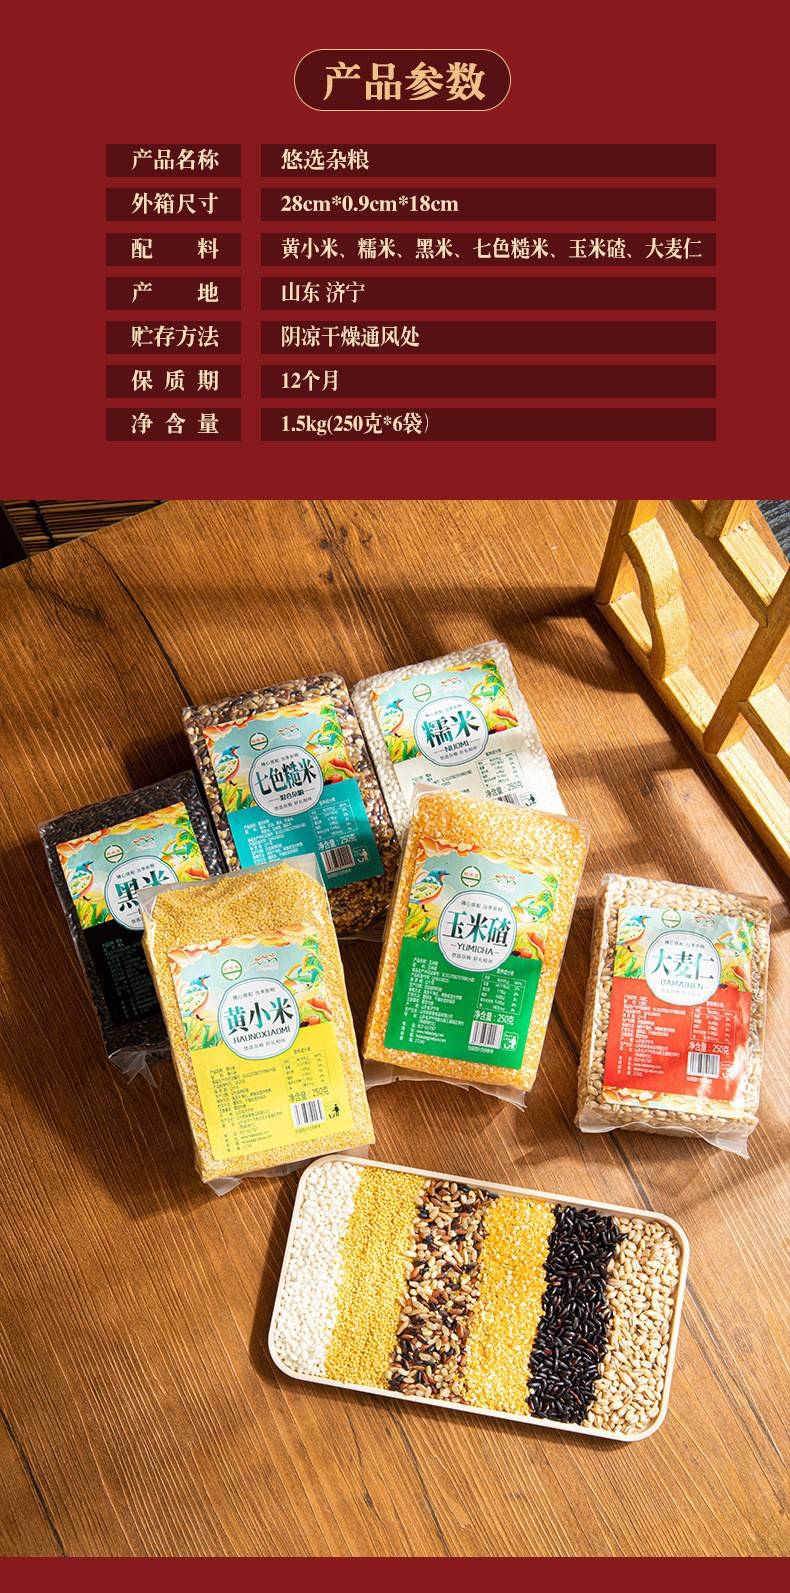 鹤来香6袋悠选五谷杂粮礼盒250g6袋黄小米黑米糯米大麦仁七色糙米